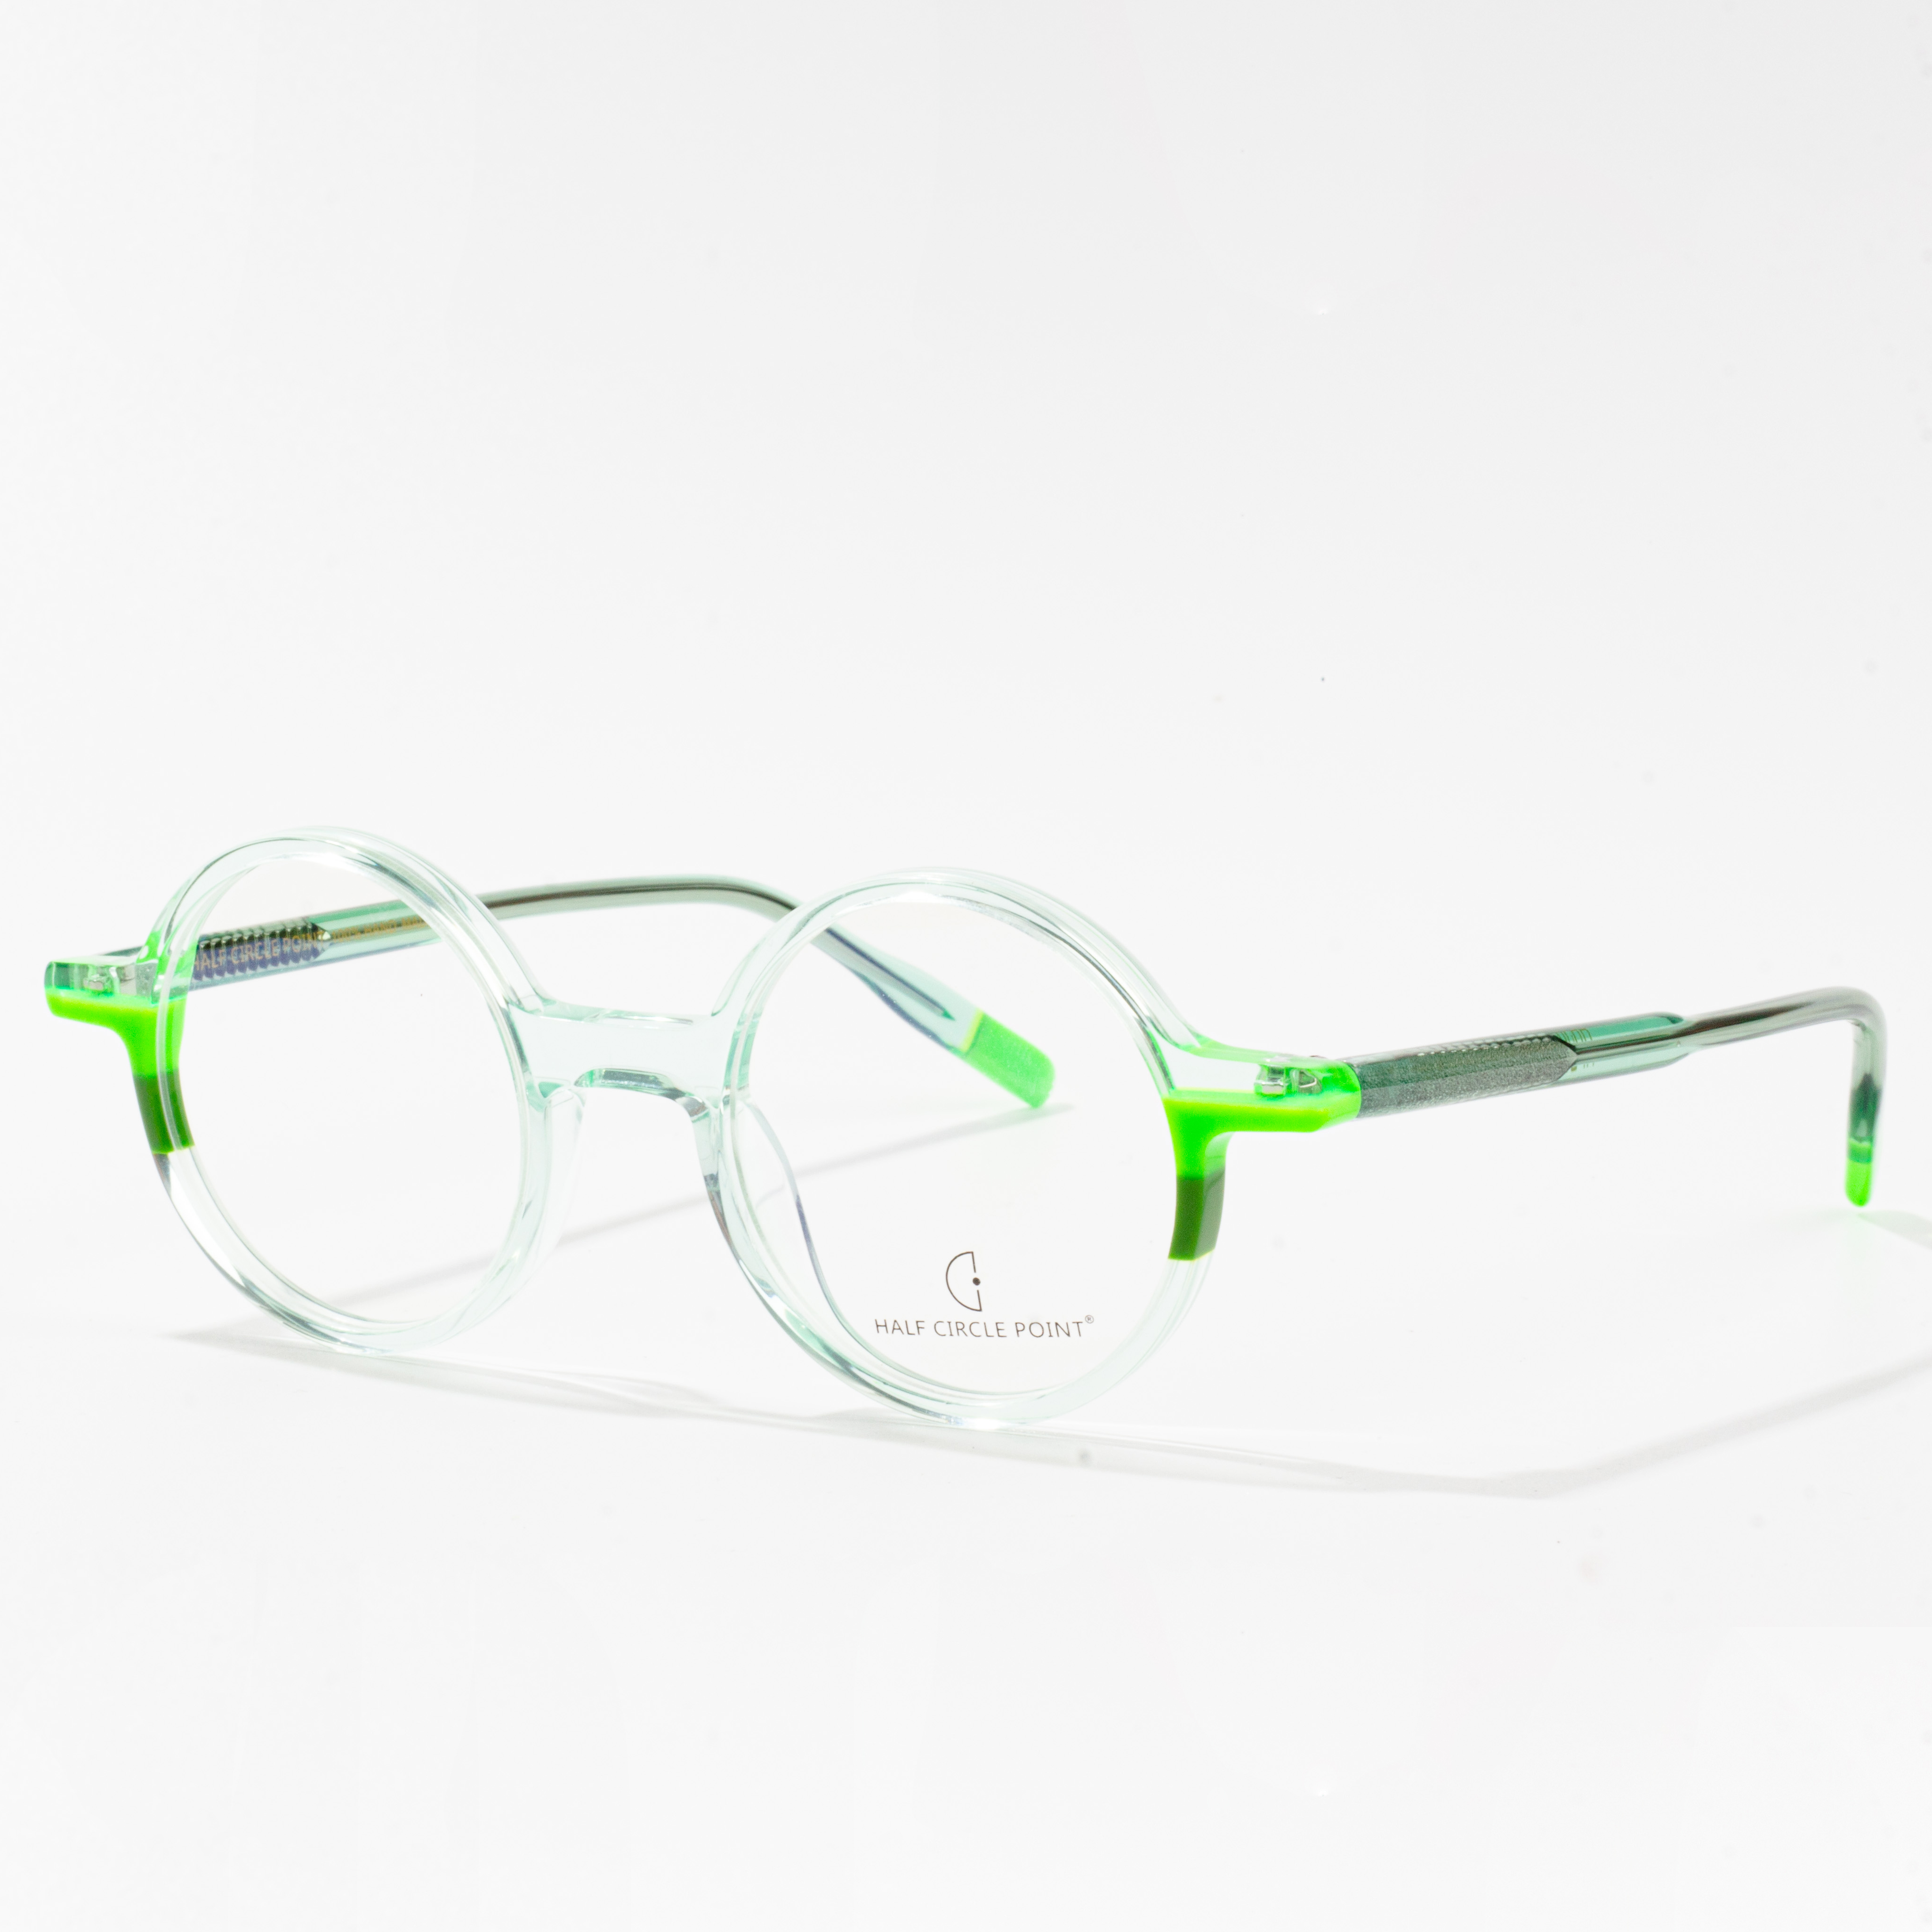 dizainerių sukurti akinių rėmeliai